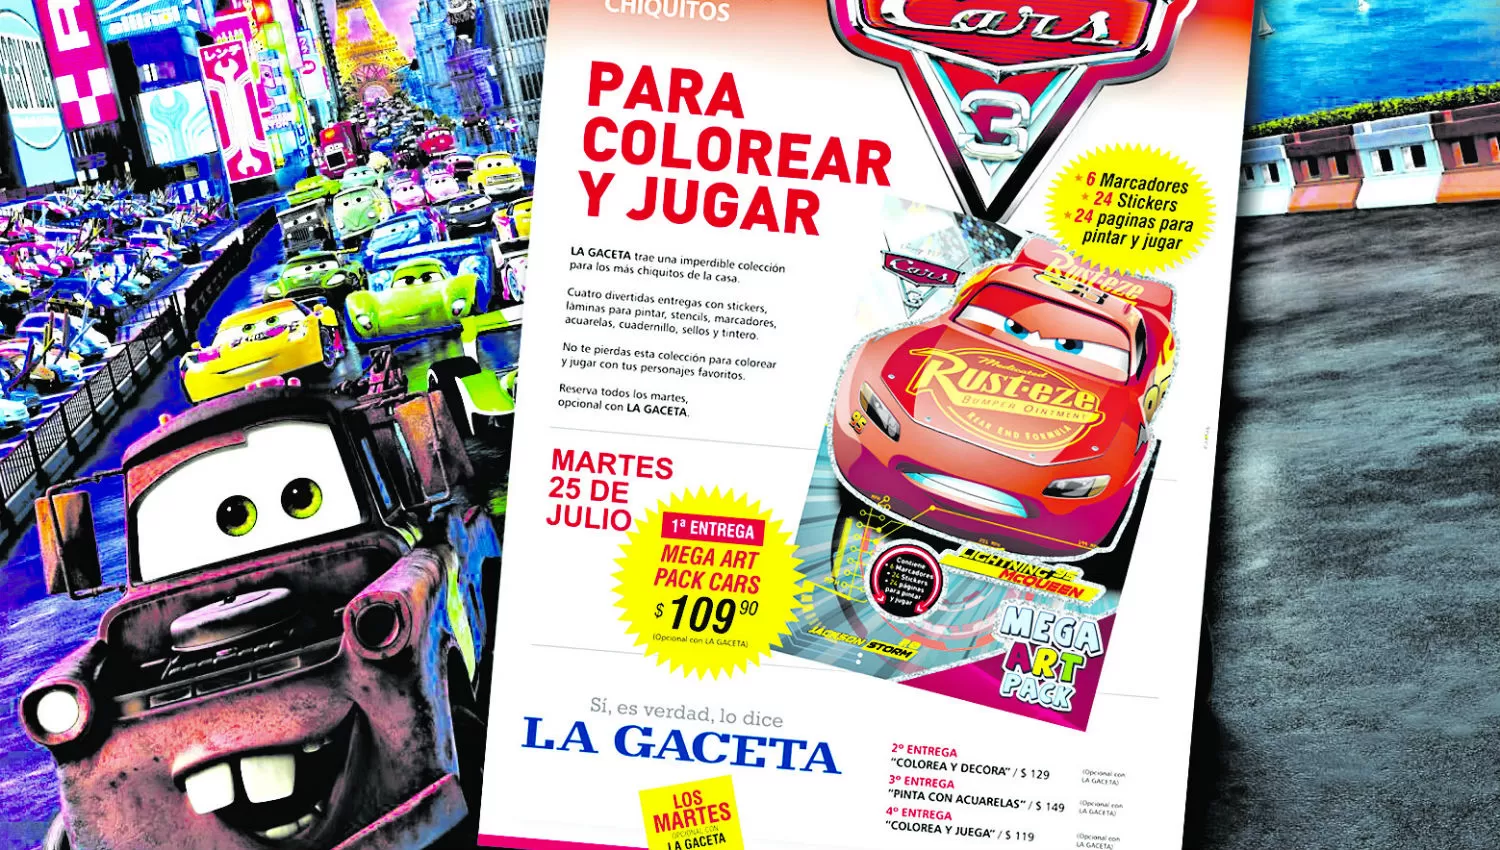 Nueva colección de LA GACETA: a colorear y jugar con los personajes de “Cars”